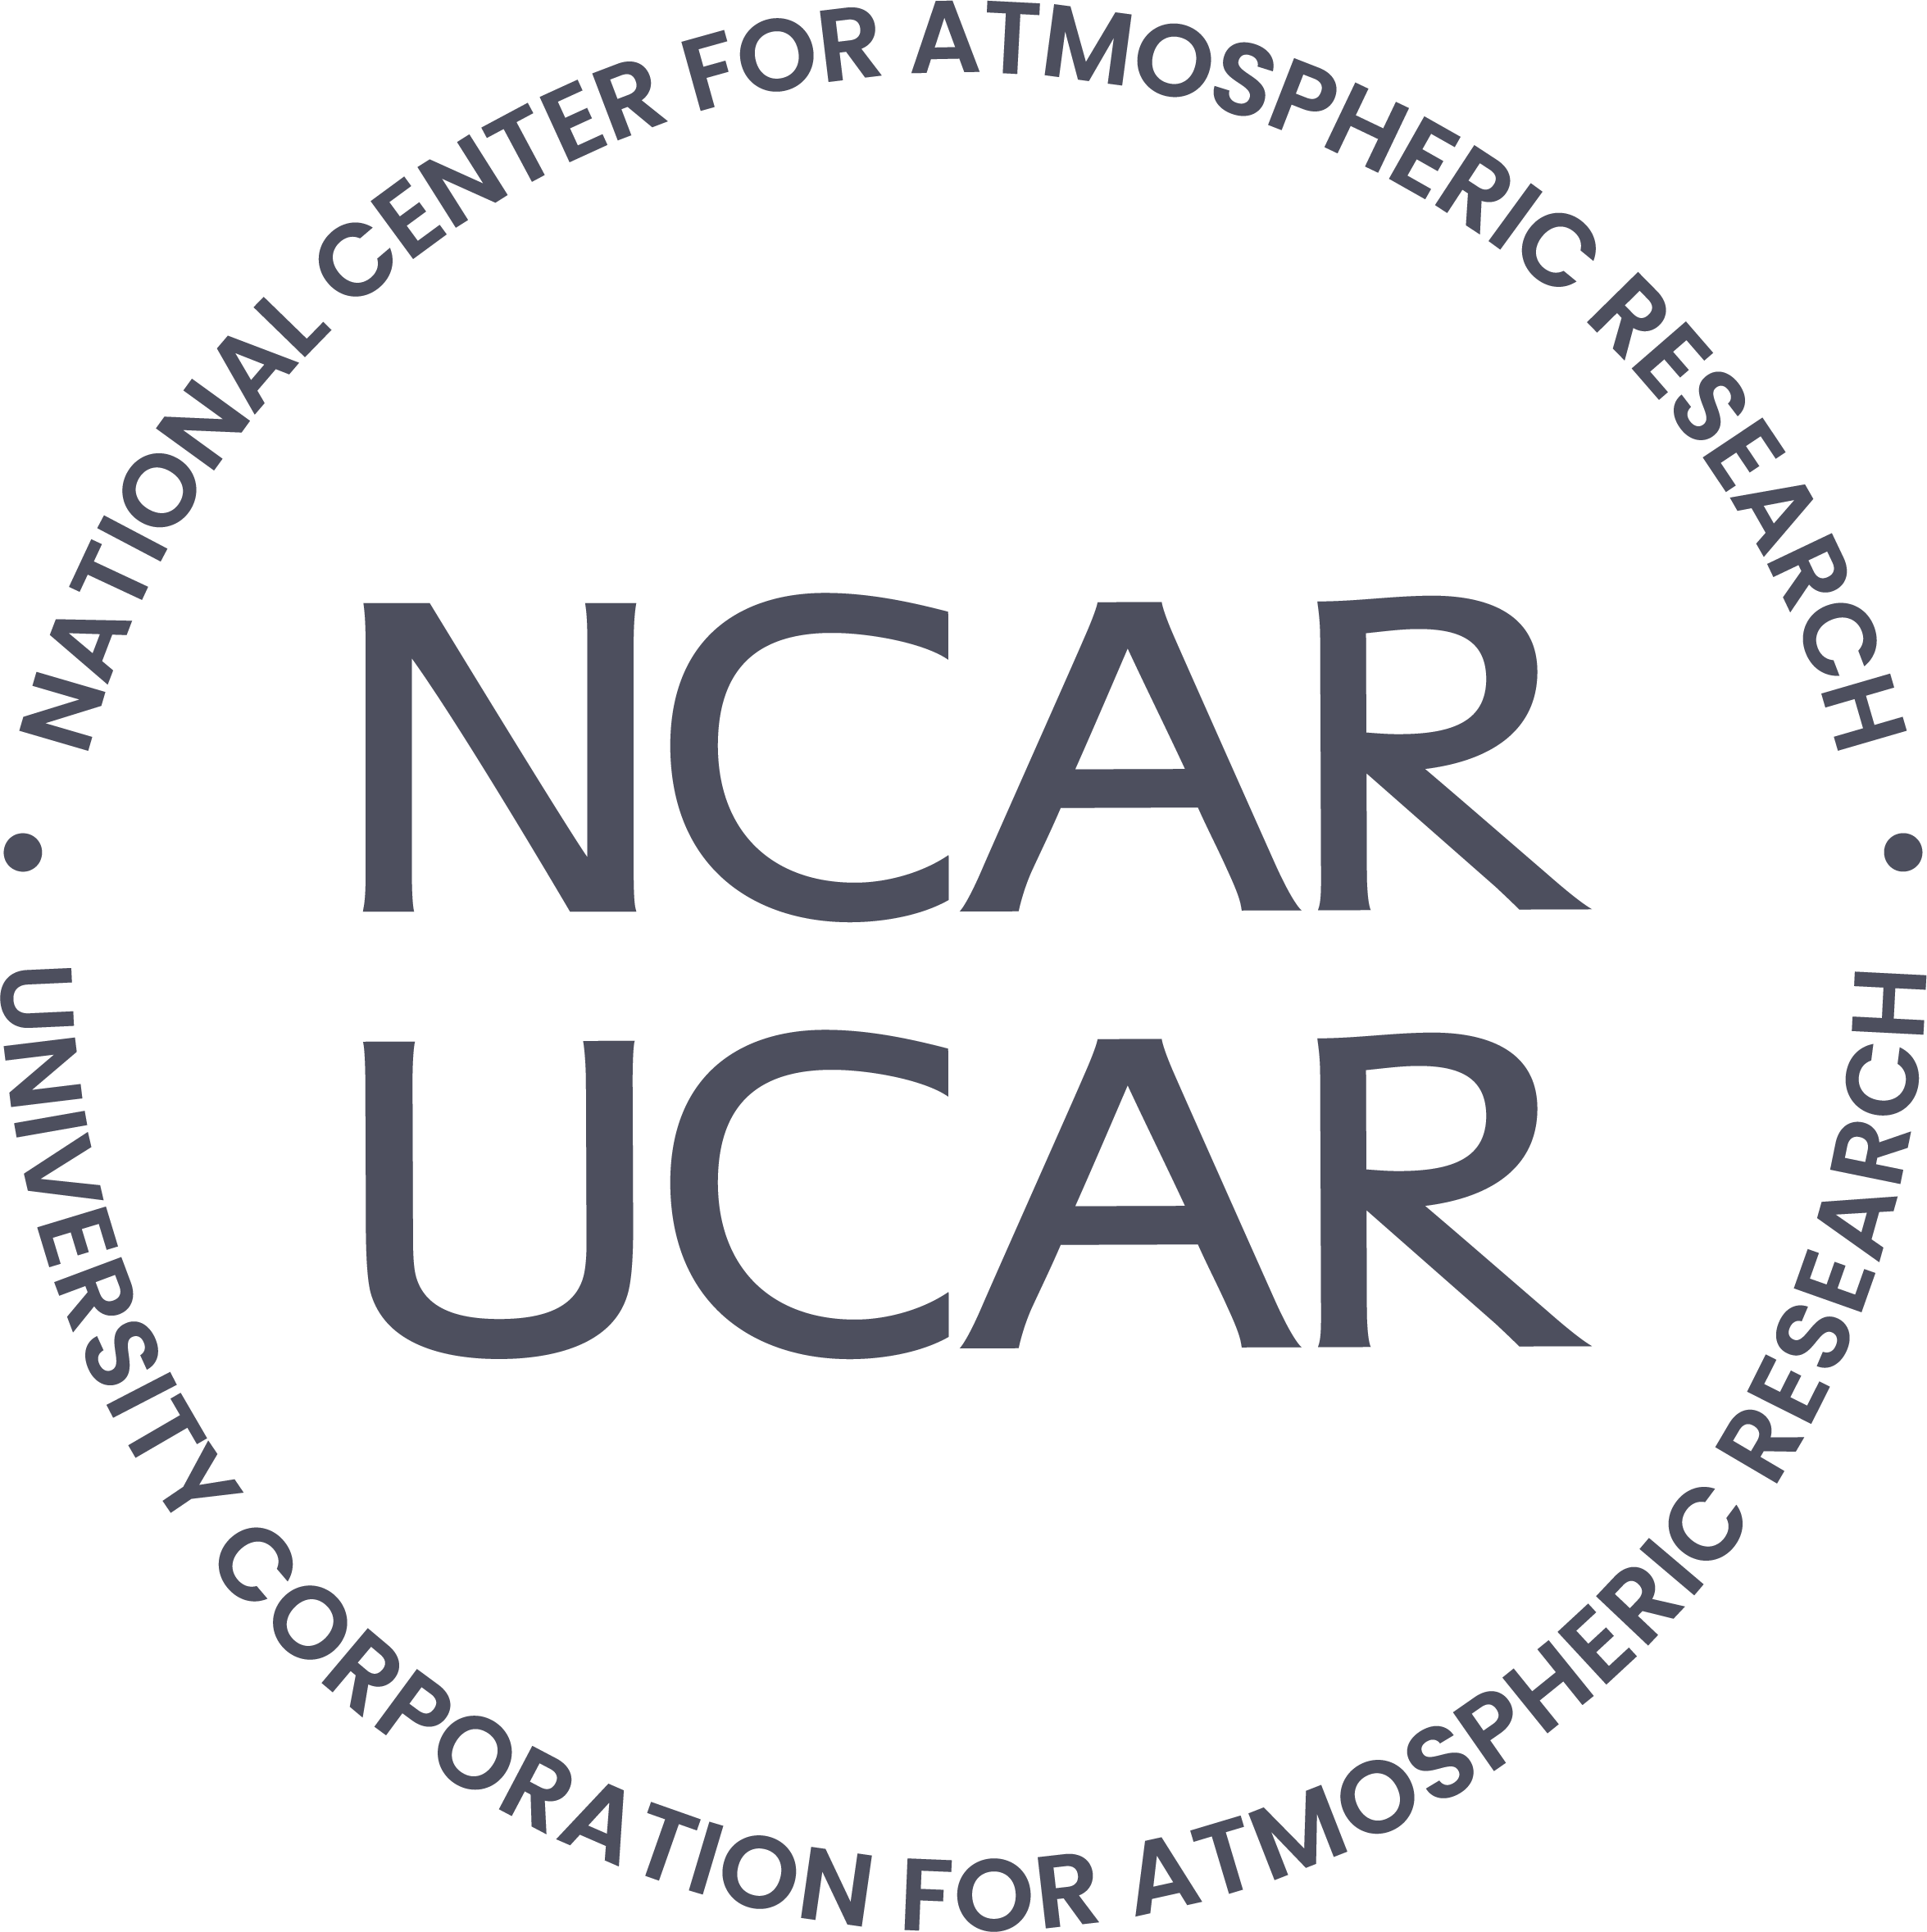 NCAR UCAR logo